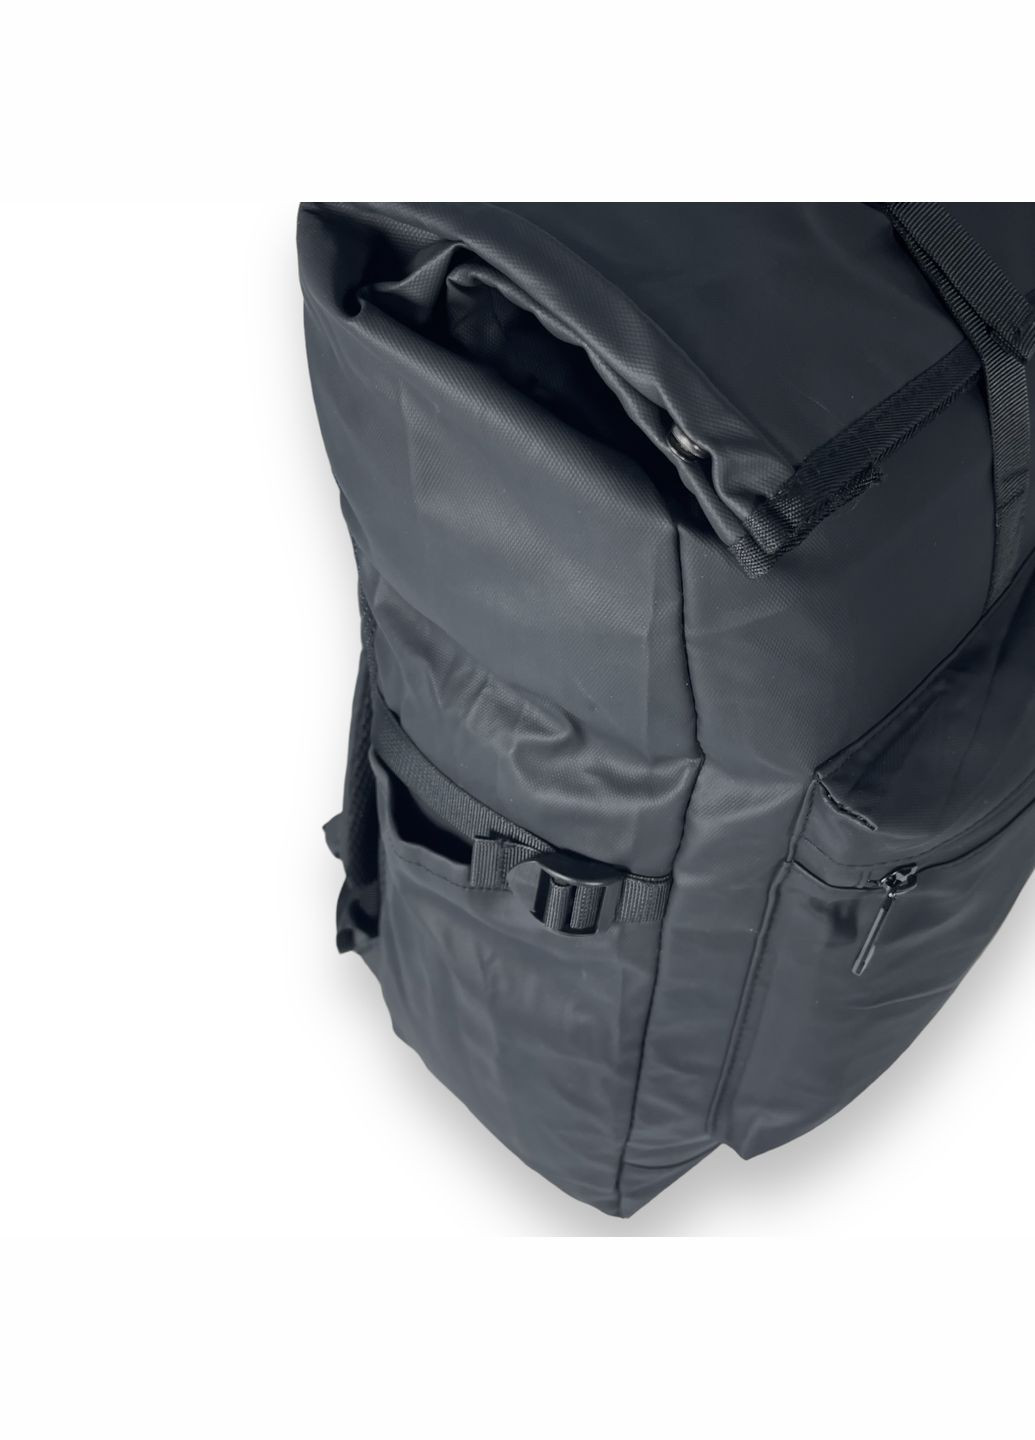 Рюкзак спортивный, 20 л, одно отделение, фронтальный карман, боковые карманы, размер: 45*27*15 см, черный BagWay (285815008)